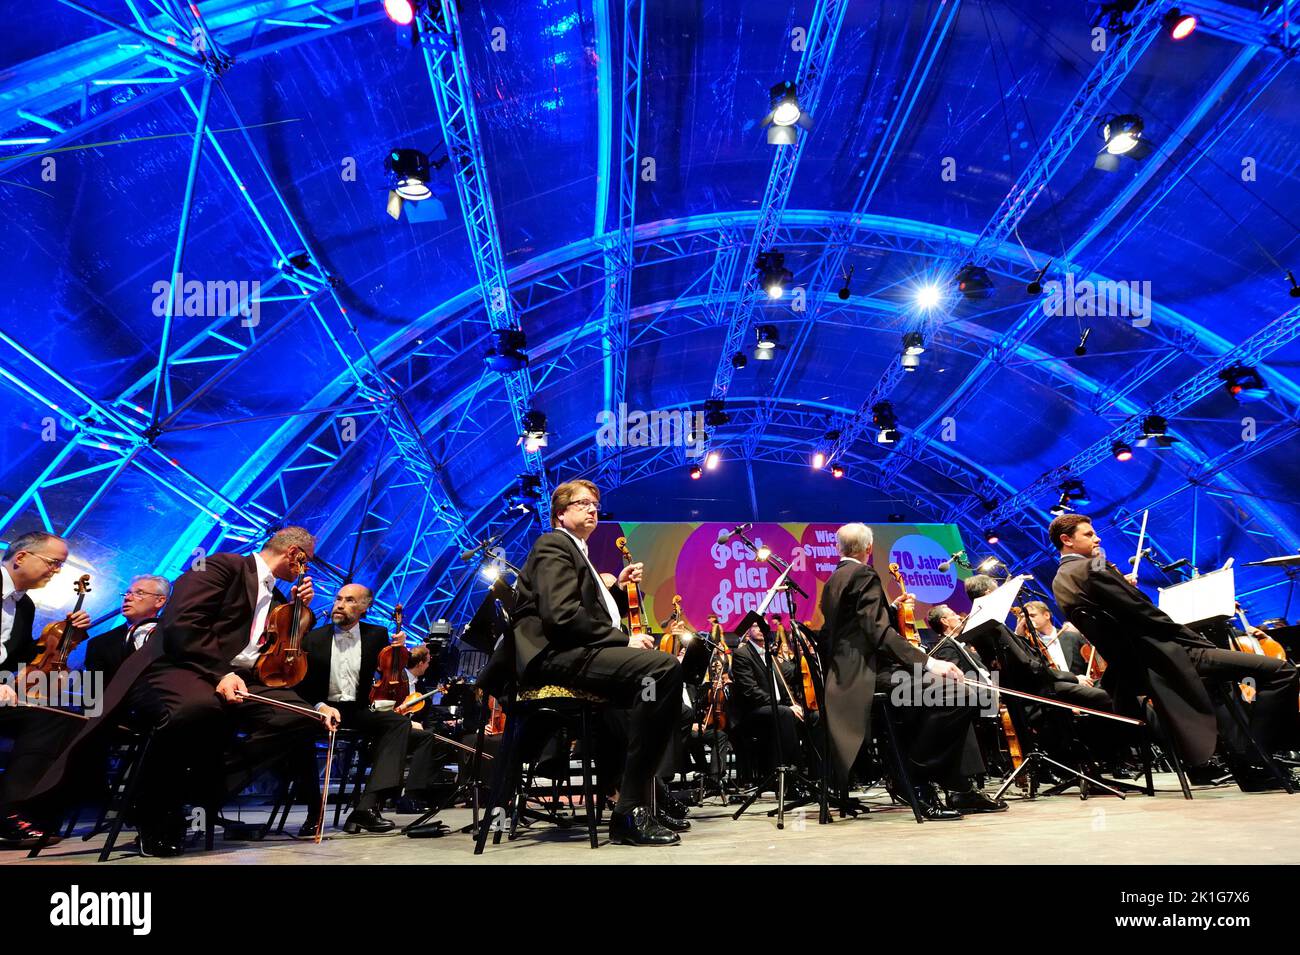 Viena, Austria. 08 de mayo de 2015. La Orquesta Sinfónica de Viena en la Plaza de los Héroes Foto de stock